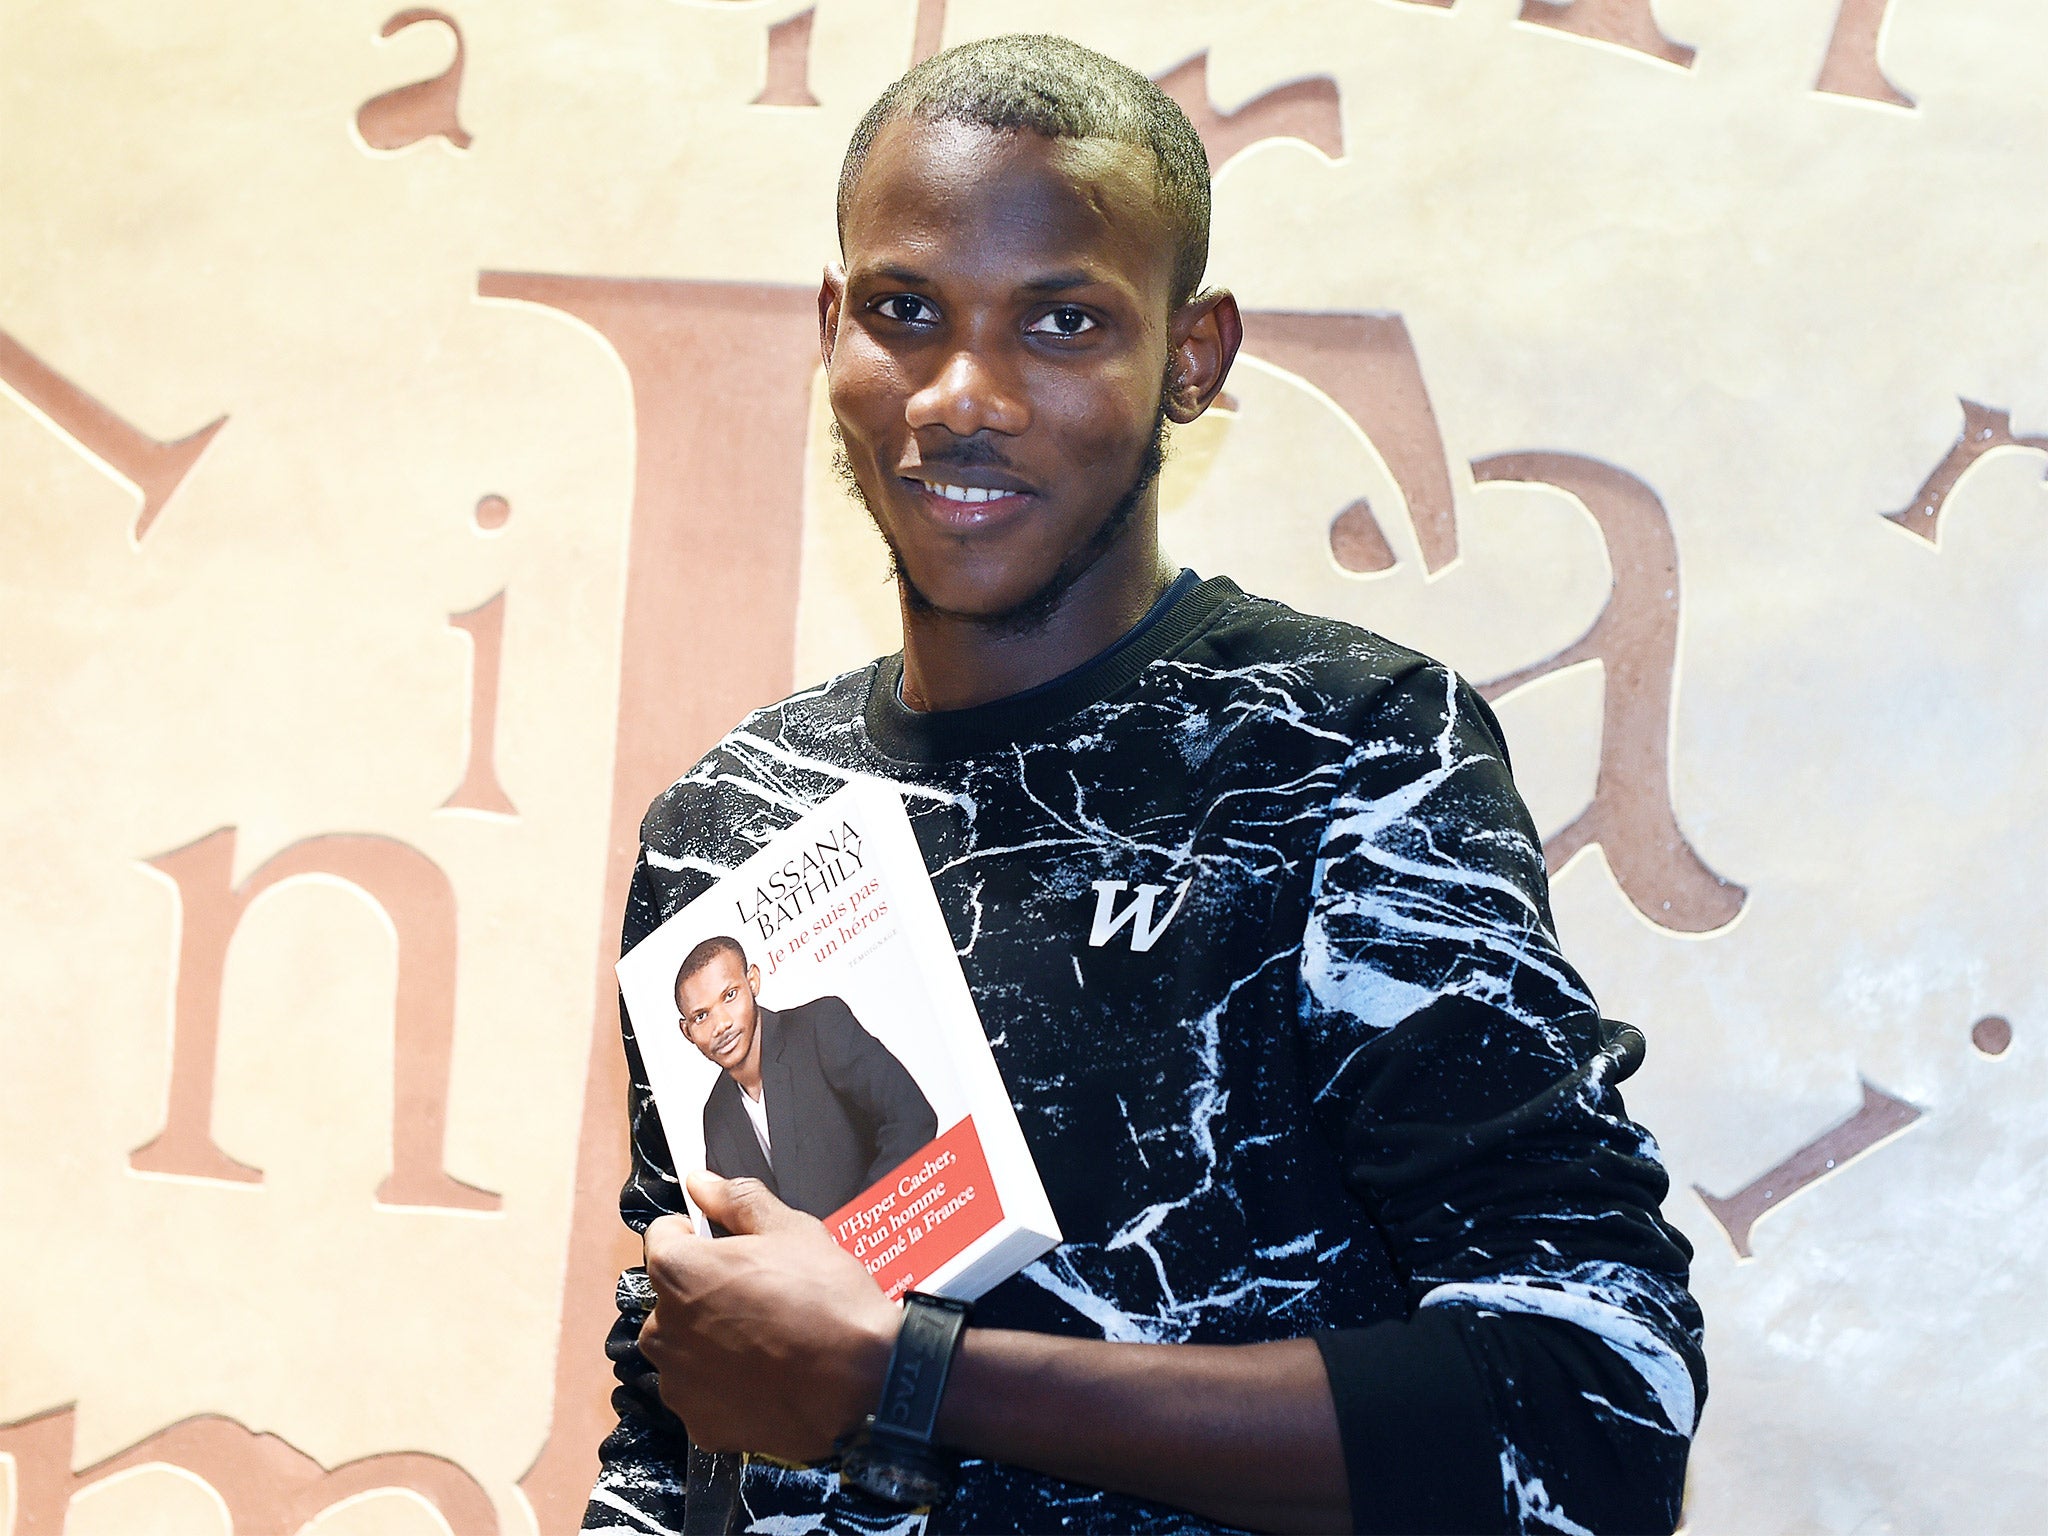 Lassana Bathily with his book ‘Je ne suis pas un heros’ (‘I